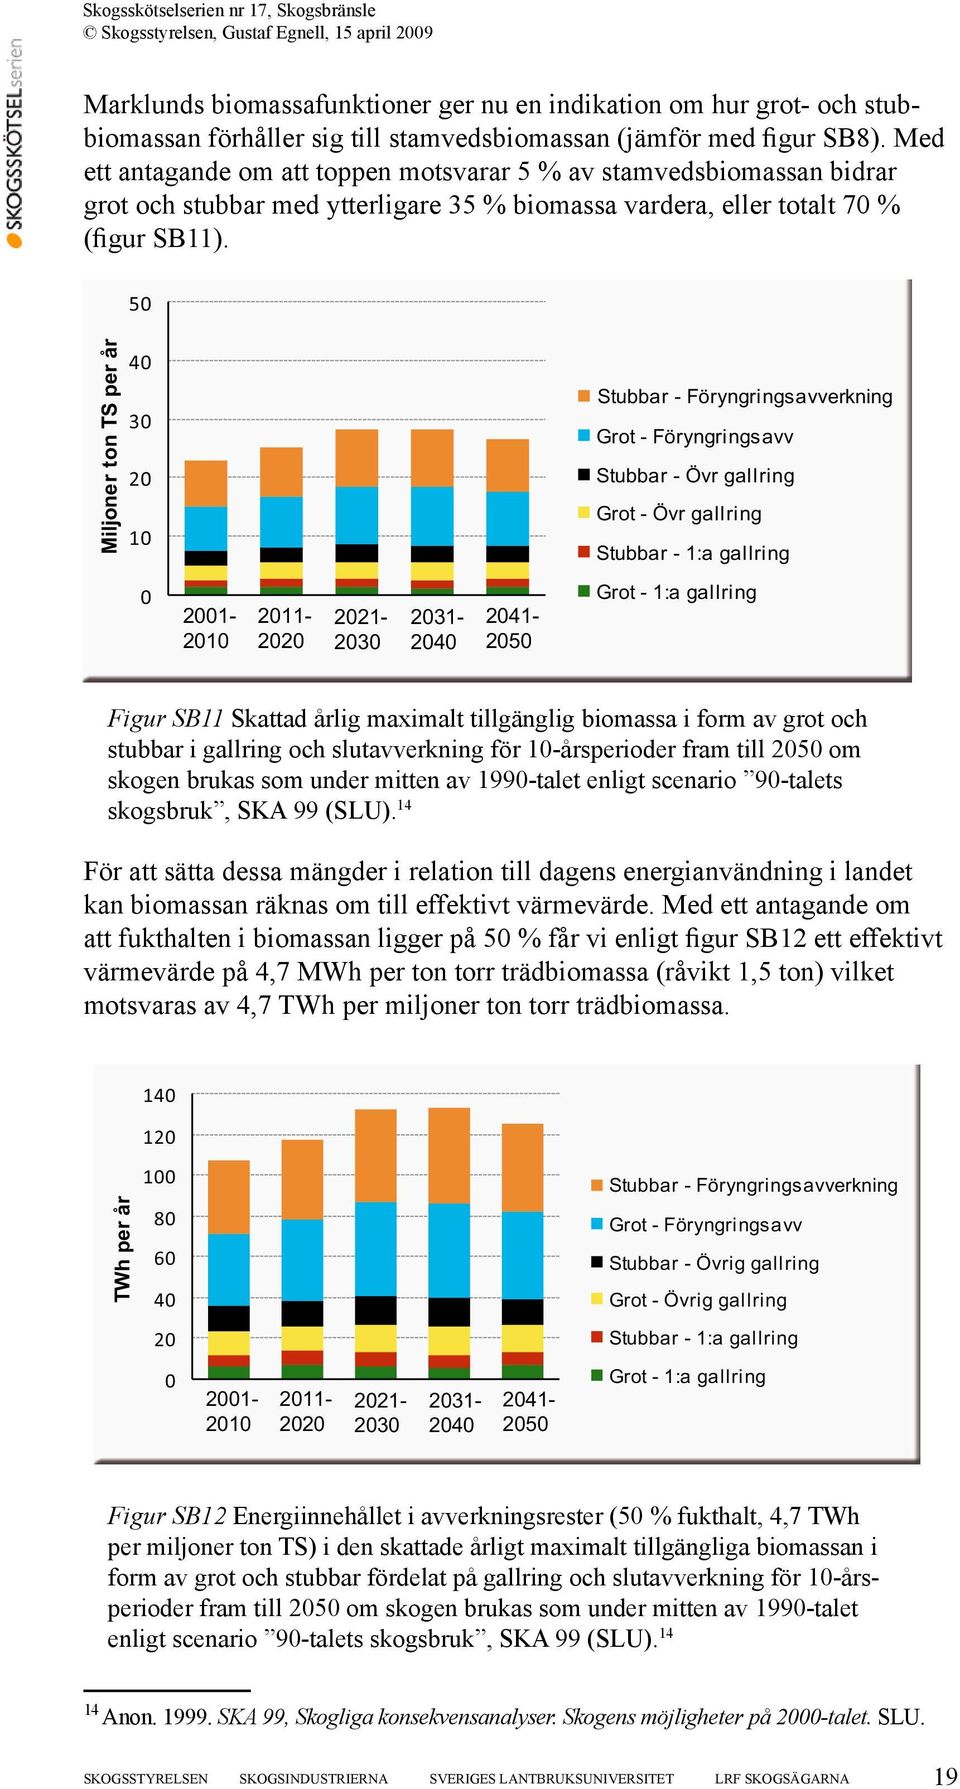 50 Miljoner ton TS per år 40 30 20 10 Stubbar - Föryngringsavverkning Grot - Föryngringsavv Stubbar - Övr gallring Grot - Övr gallring Stubbar - 1:a gallring 0 2001-2010 2011-2020 2021-2030 2031-2040